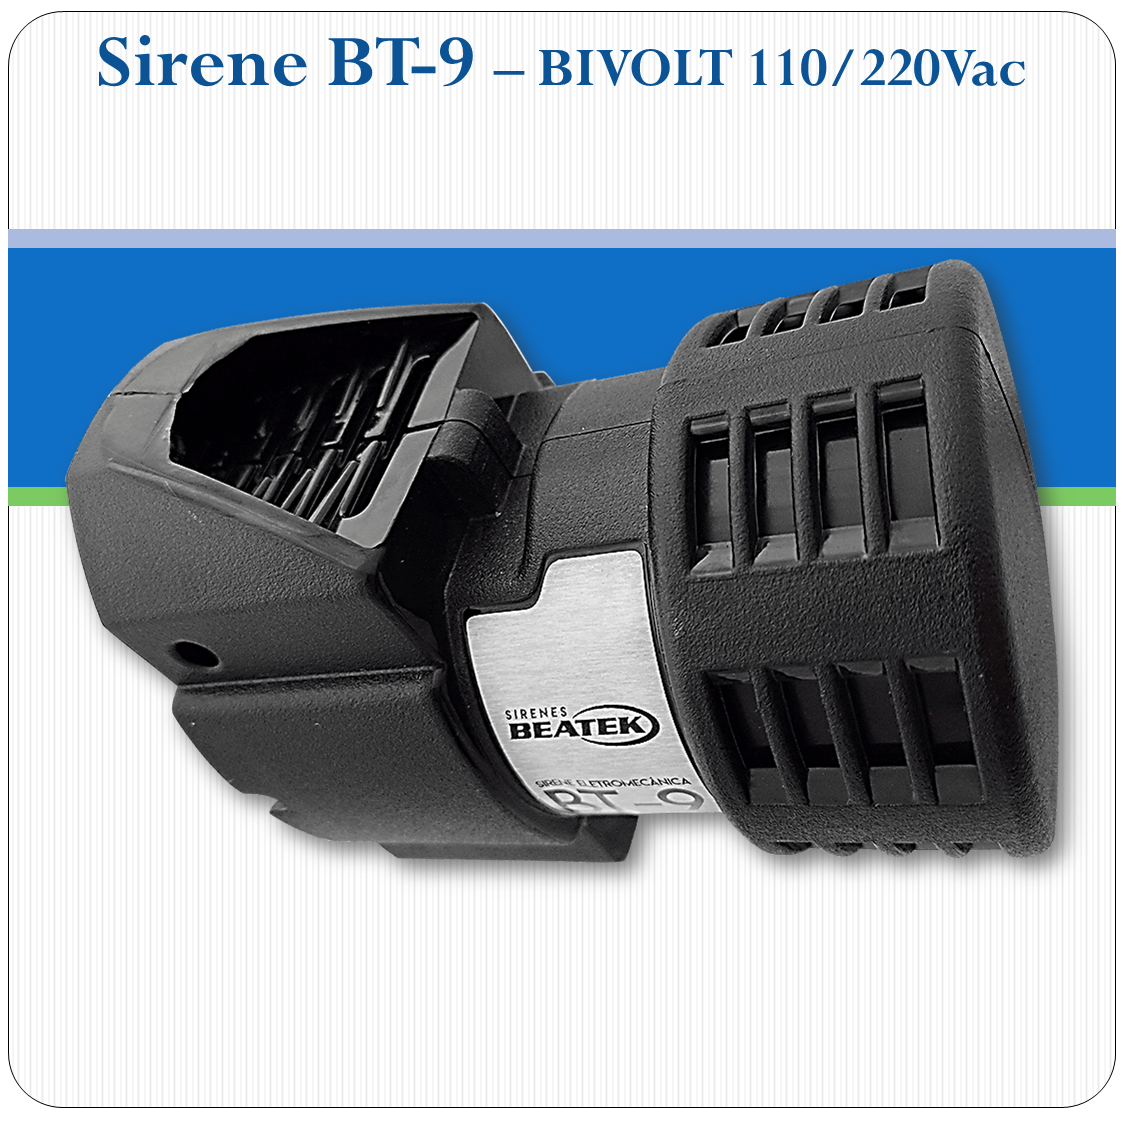 Sirene Eletromecânica BT-9 - 113.8dB